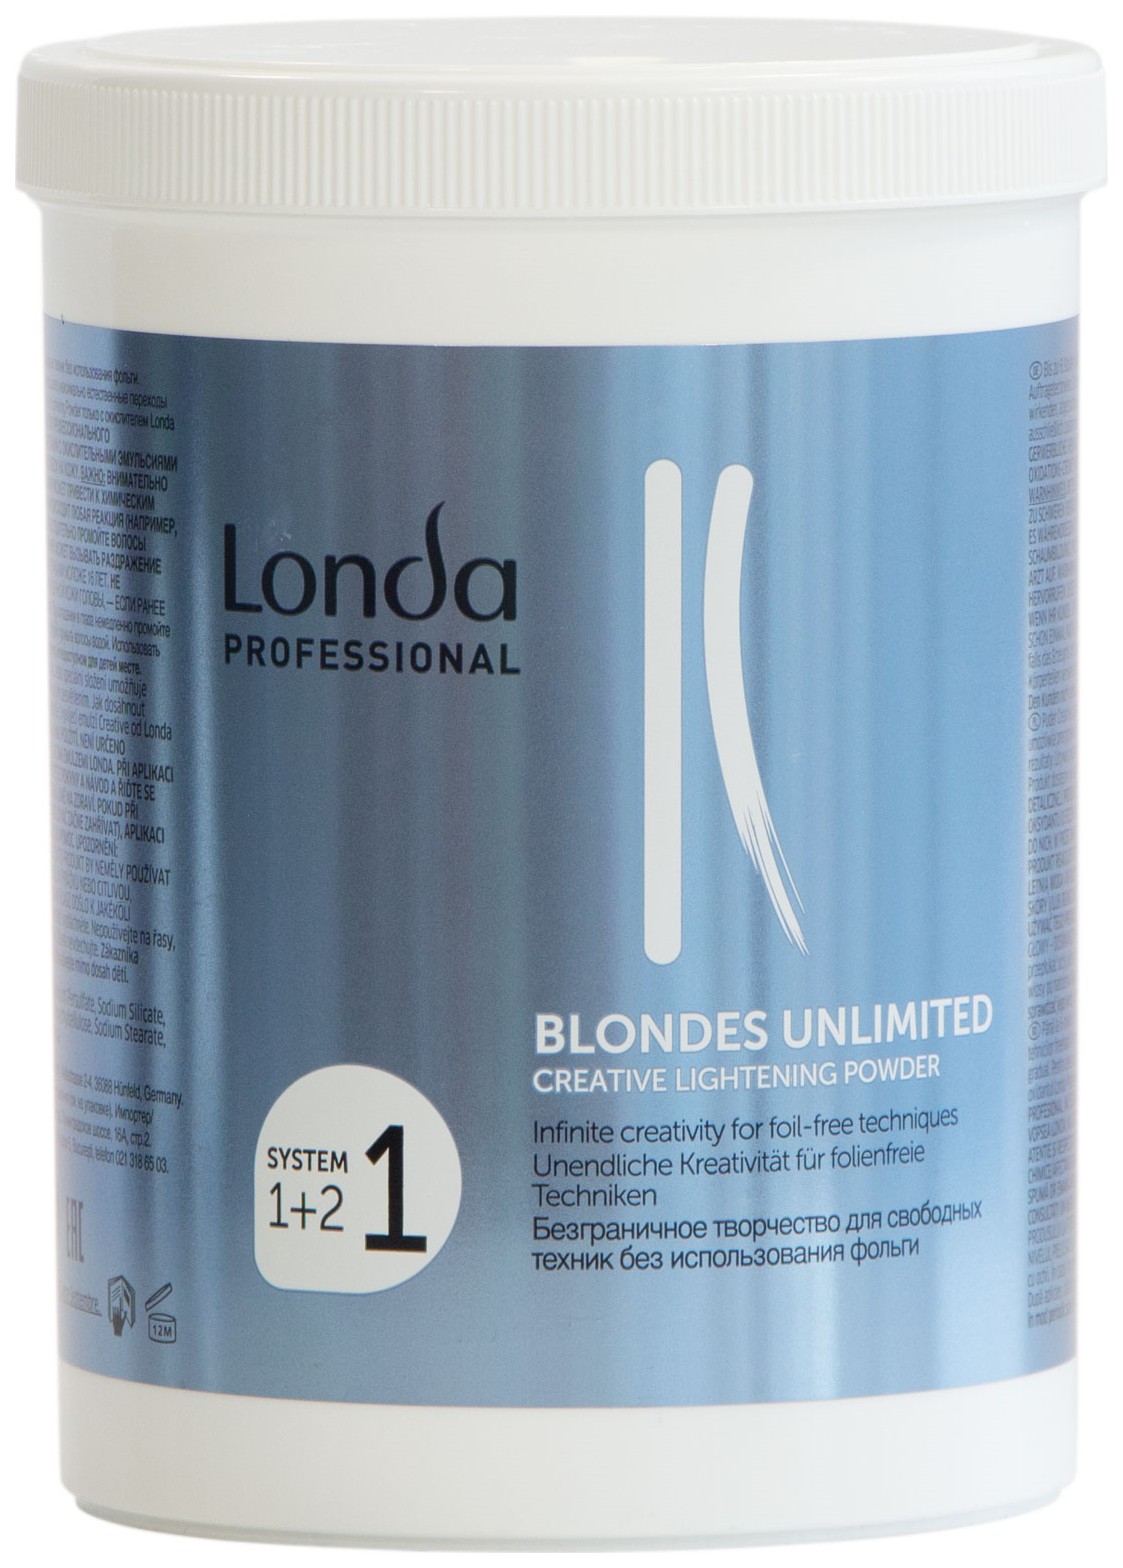 Осветлитель Londa Professional Blondes Unlimited Creative Lightening Powder 400 г окислитель 12% blondes unlimited